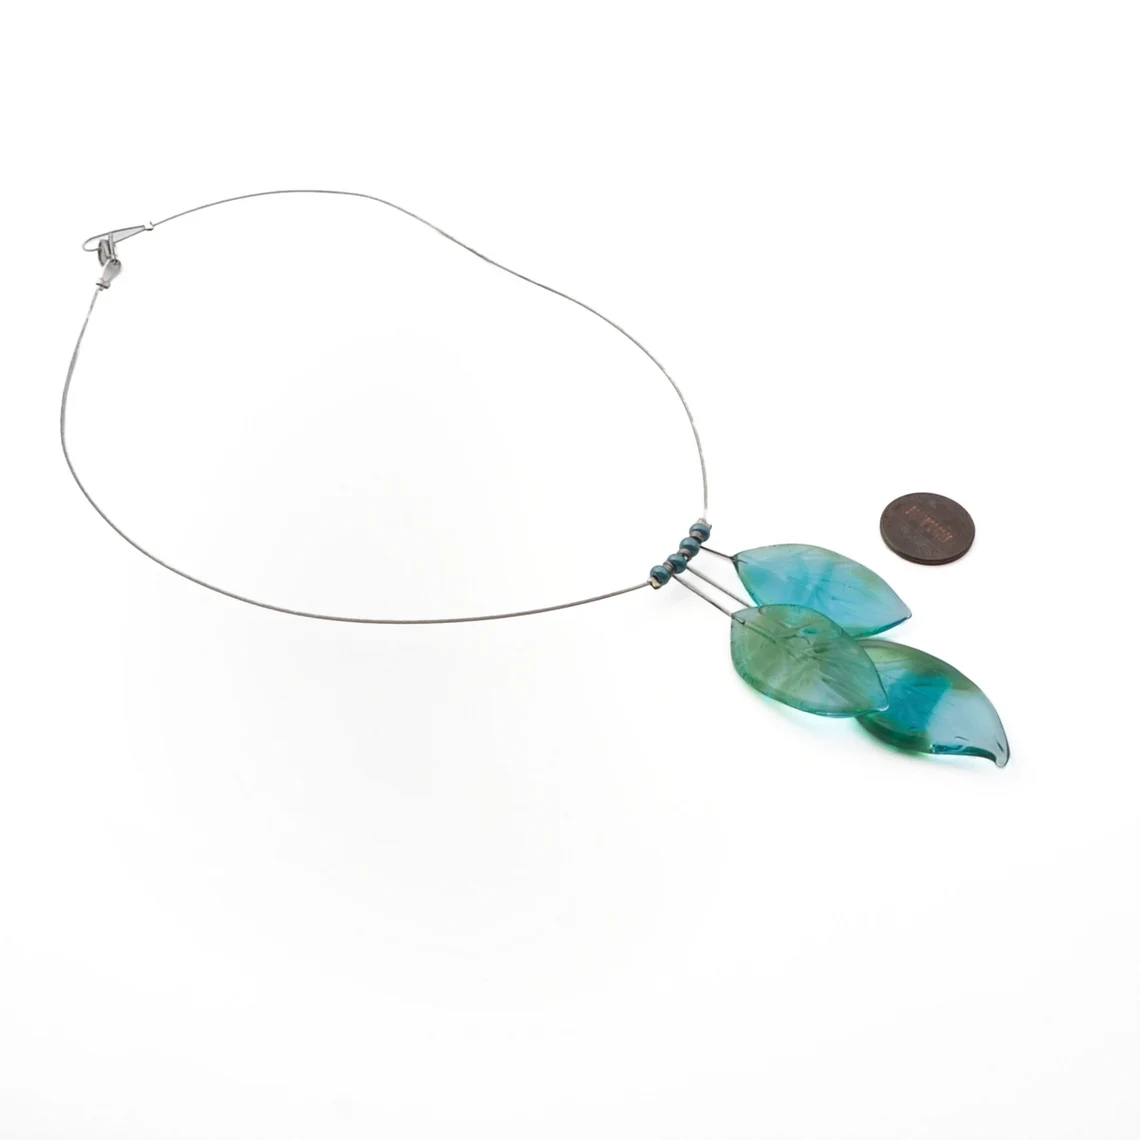 Czech lampwork multicolor leaf glass bead necklace